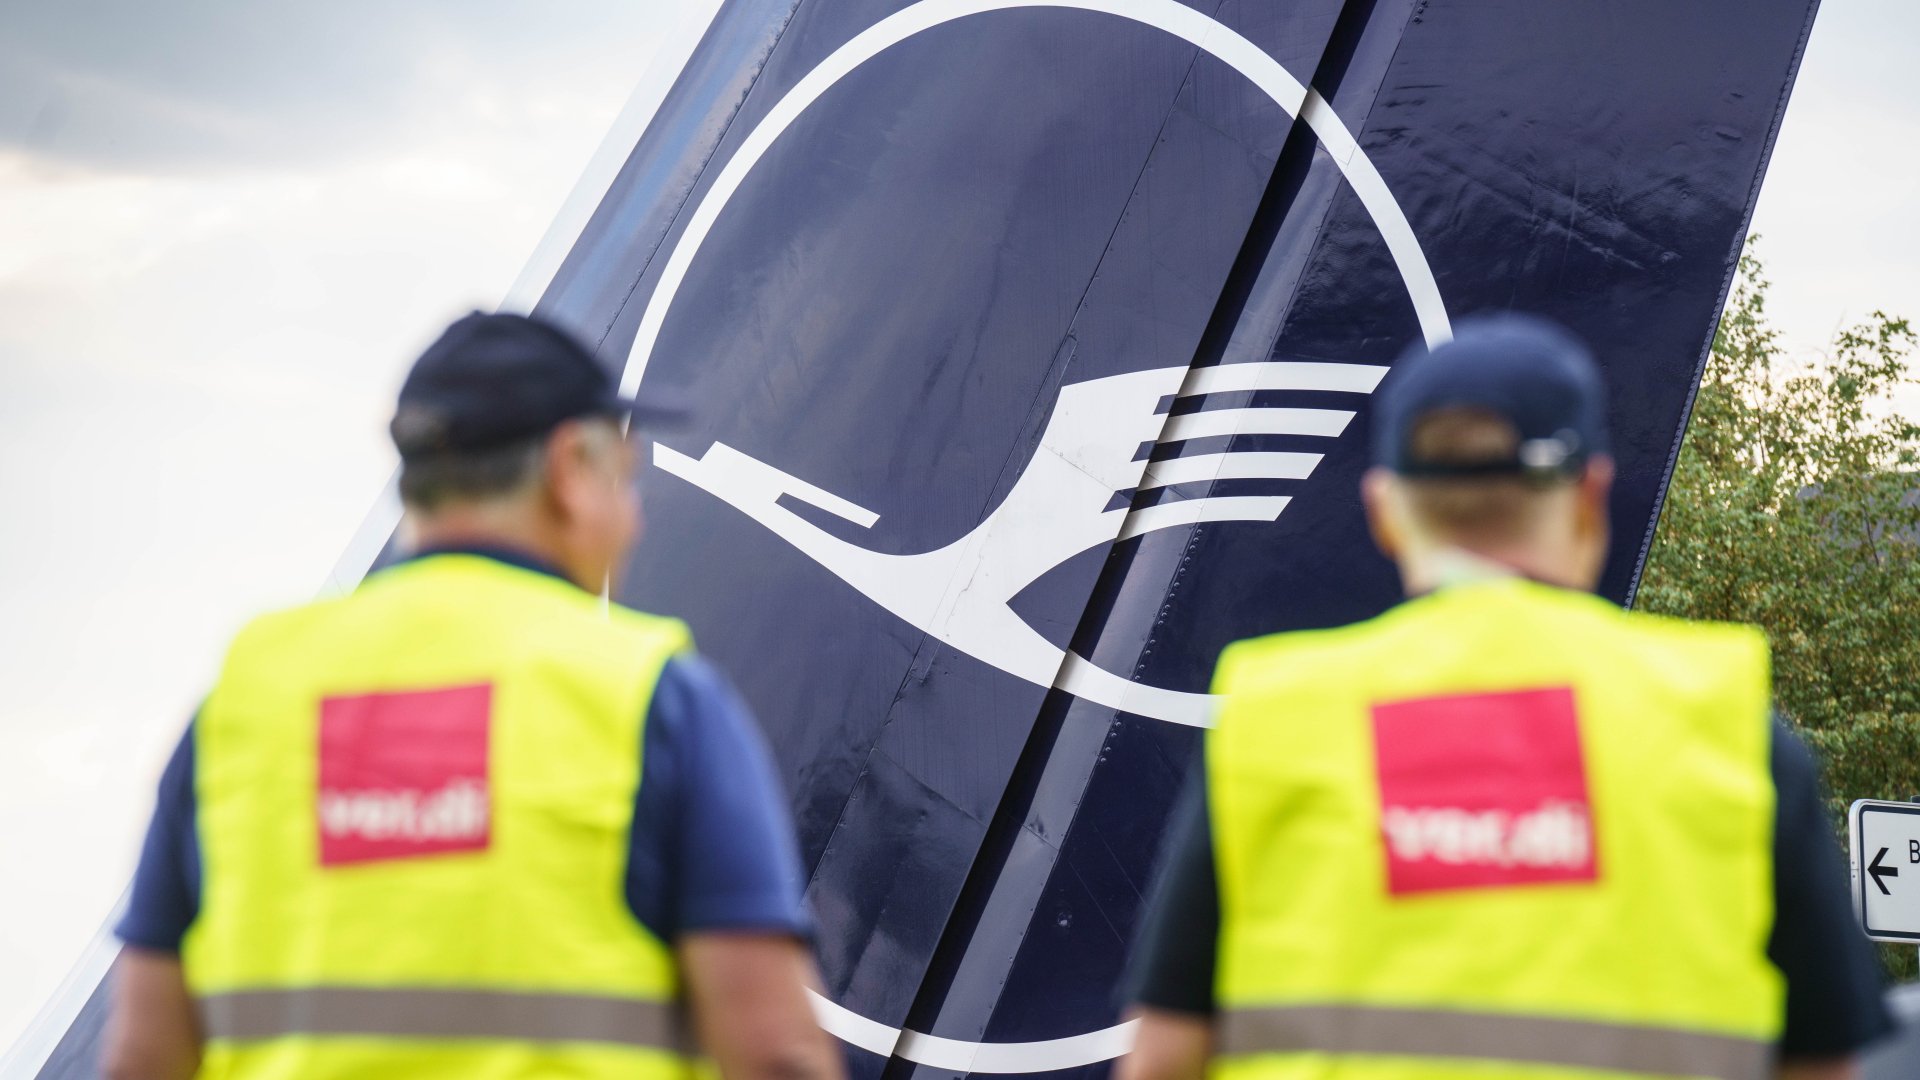 Zwei Lufthansa-Mitarbeiter in ver.di-Warnweste vor einem Flugzeug | dpa